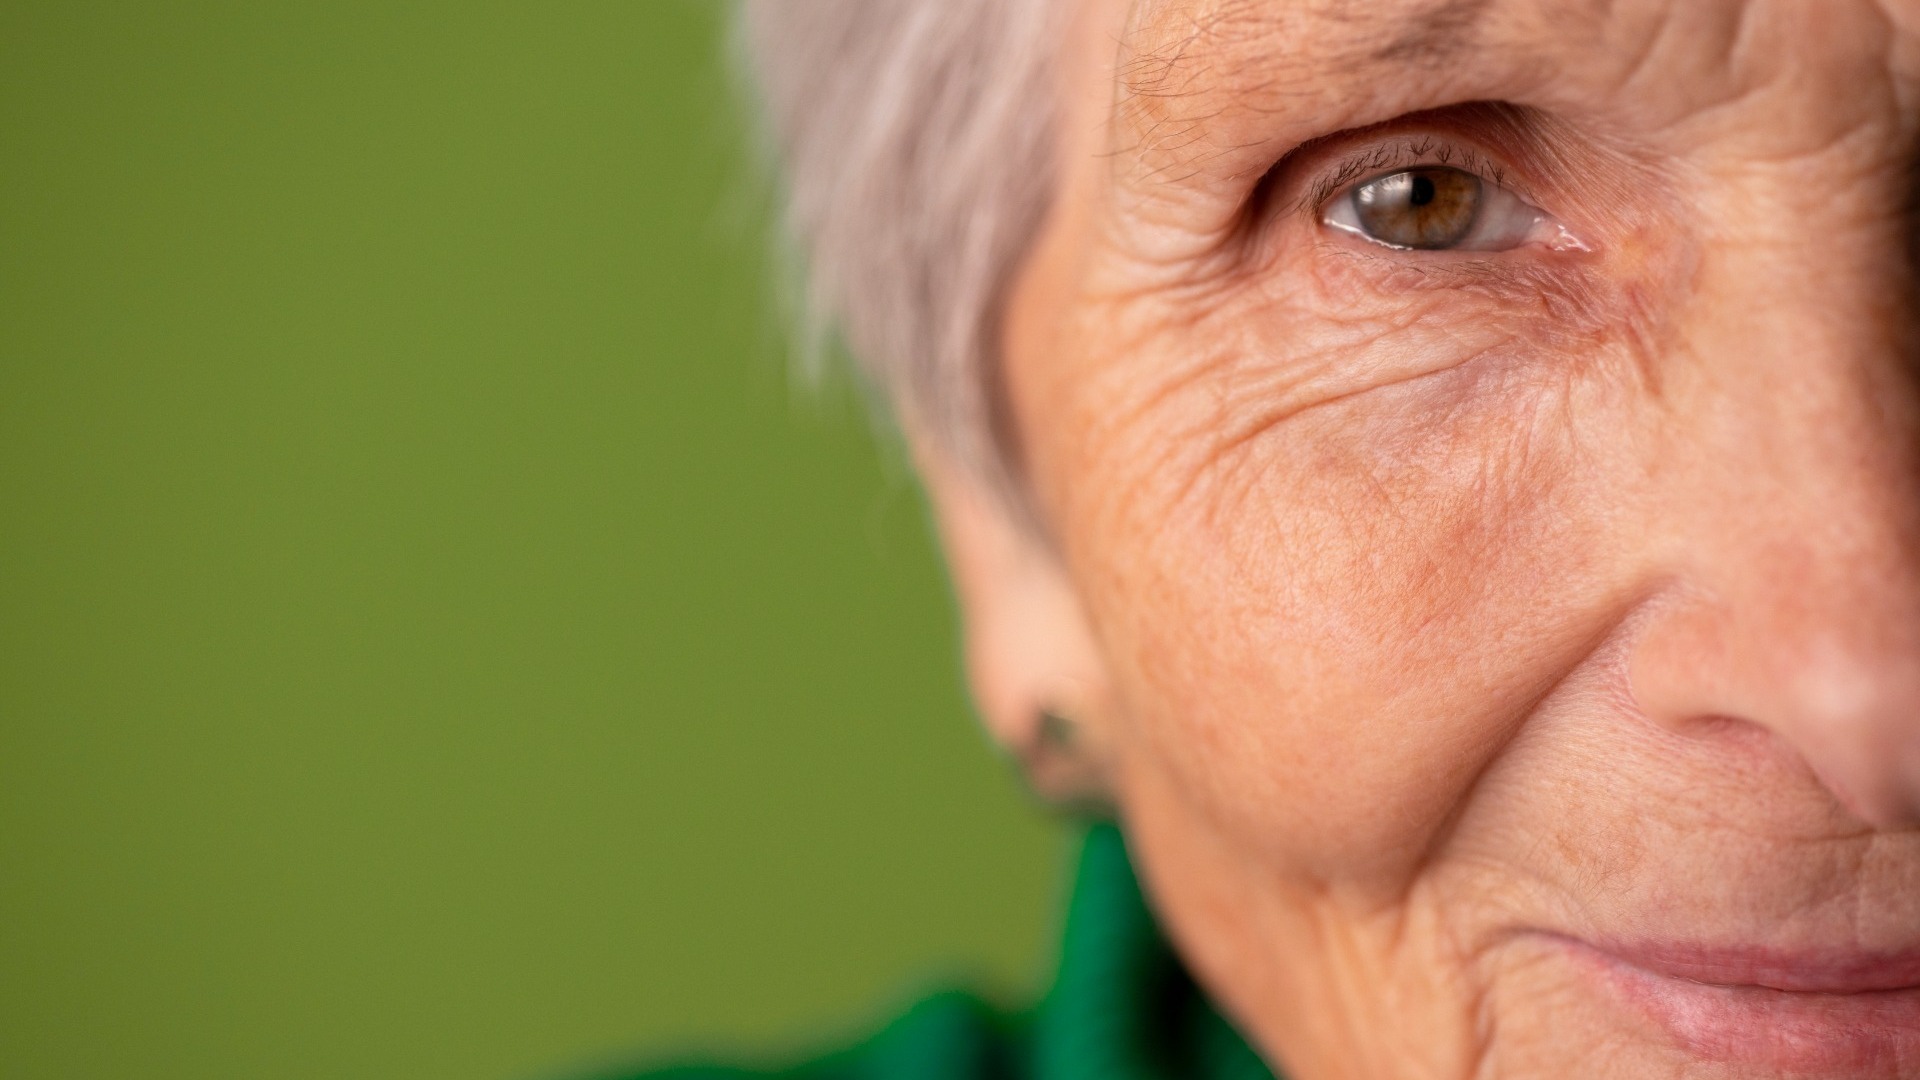 Мордочка сморщенная старушечья а глазки живые блестящие. Бабушка с морщинами. Пожилой крупно глаз. Морщины в 18. У пожилых людей появляются морщины.